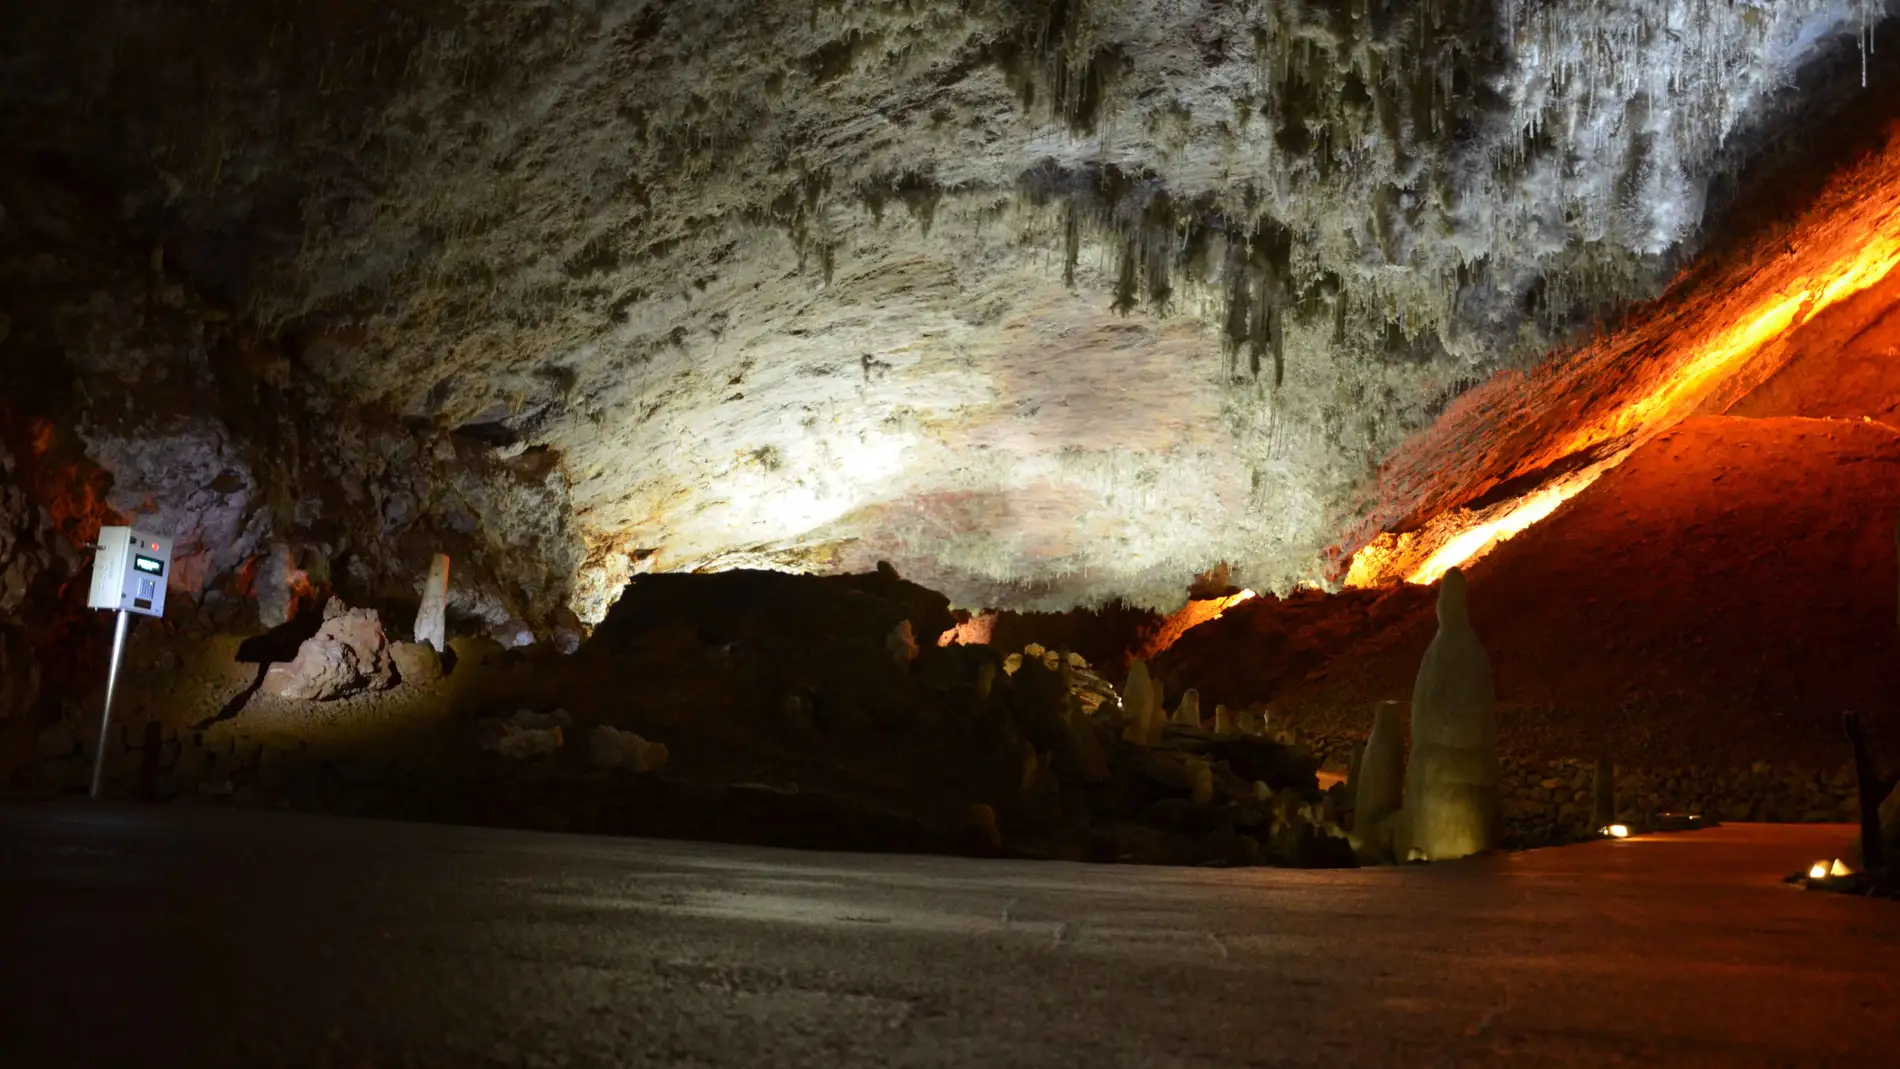 Un sistema monitoriza datos de conservacion de cuevas turisticas en tiempo real